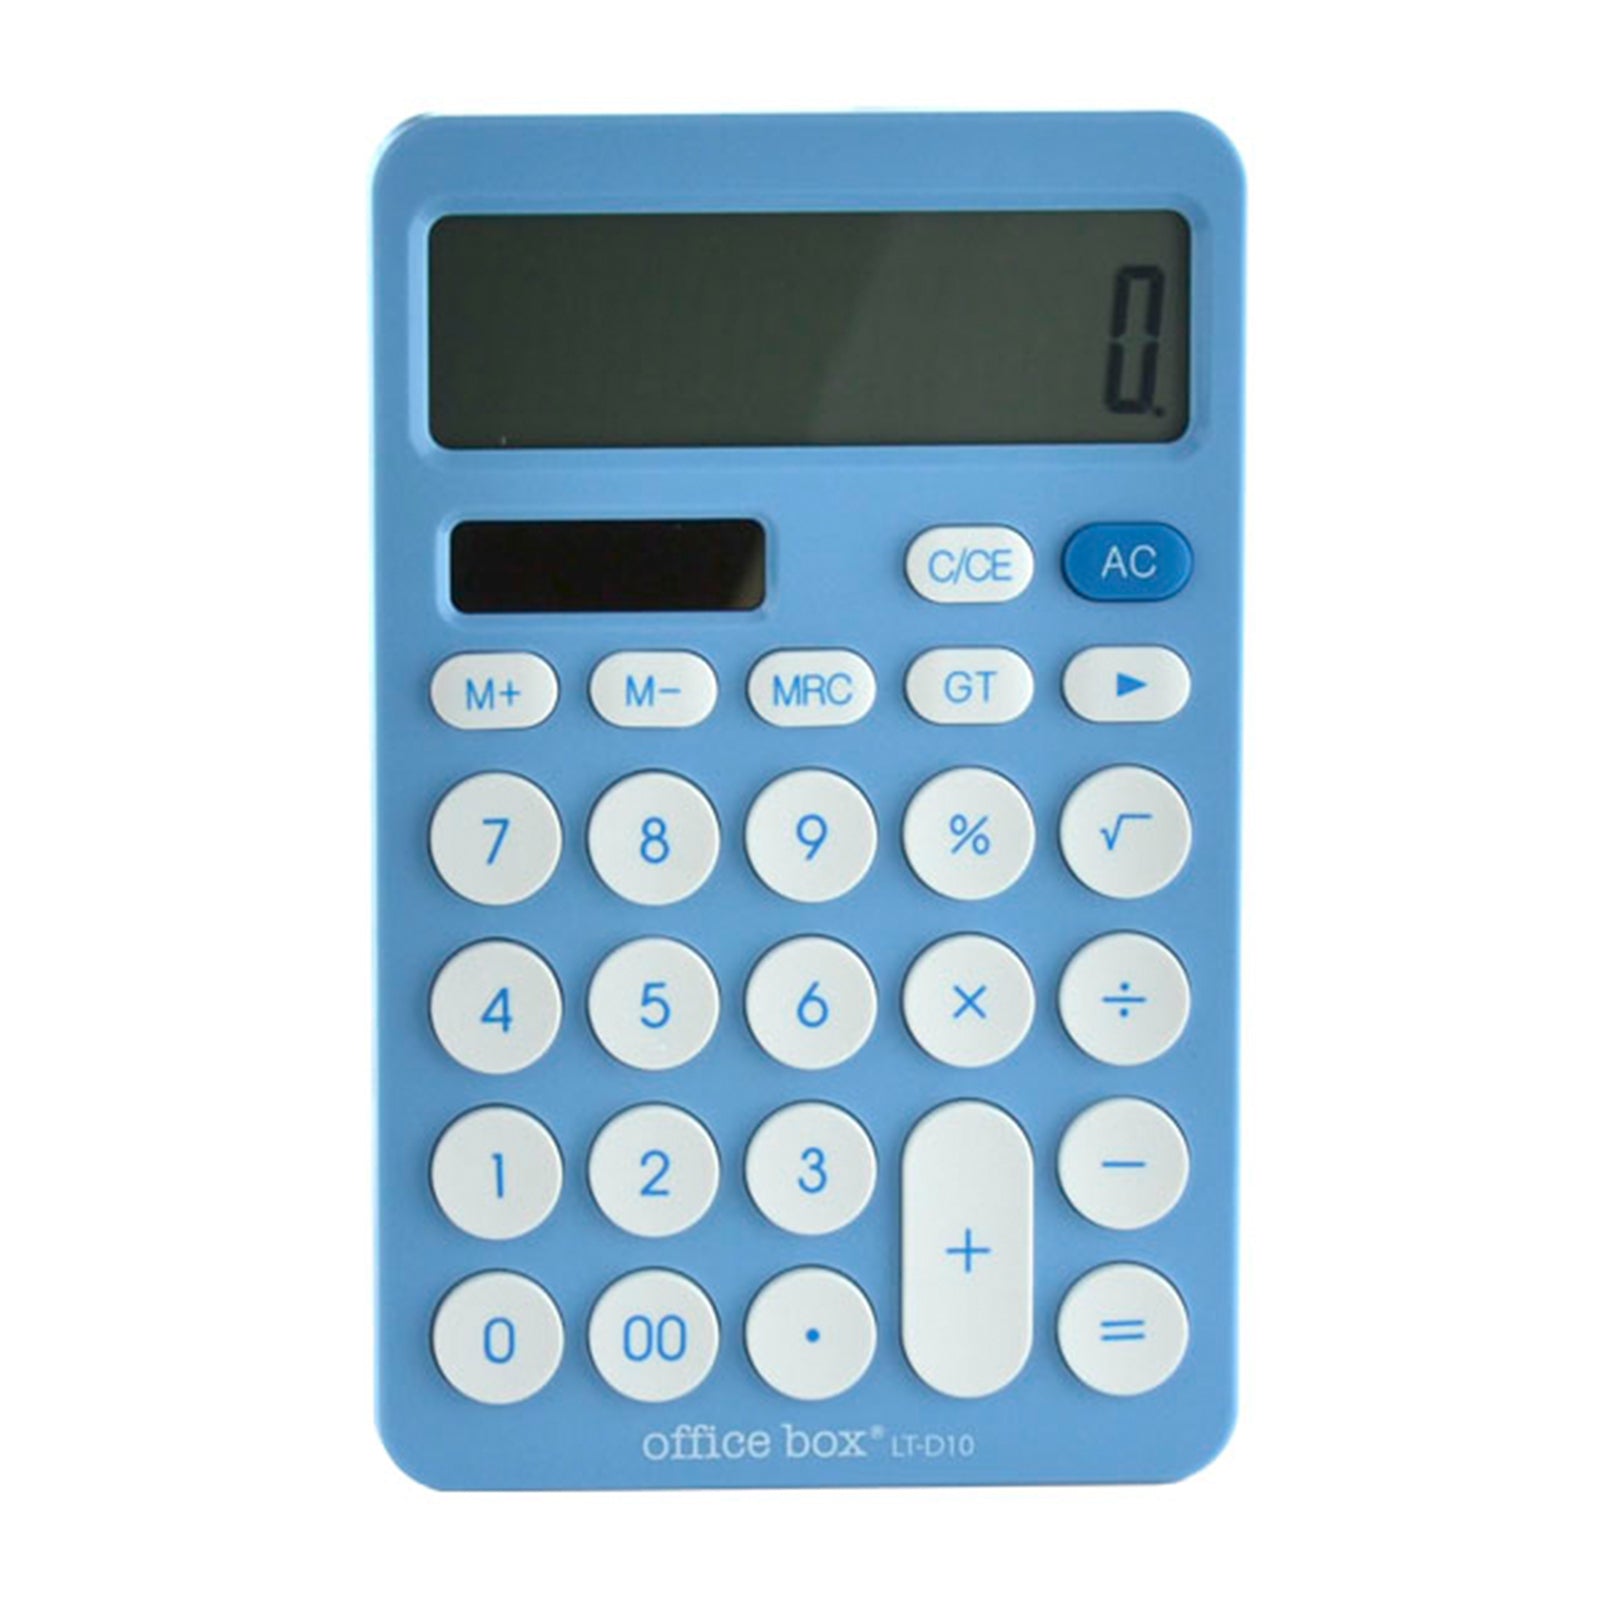 OFFICEBOX - Calculadora de Sobremesa de 12 Dígitos con Pantalla XL. Azul